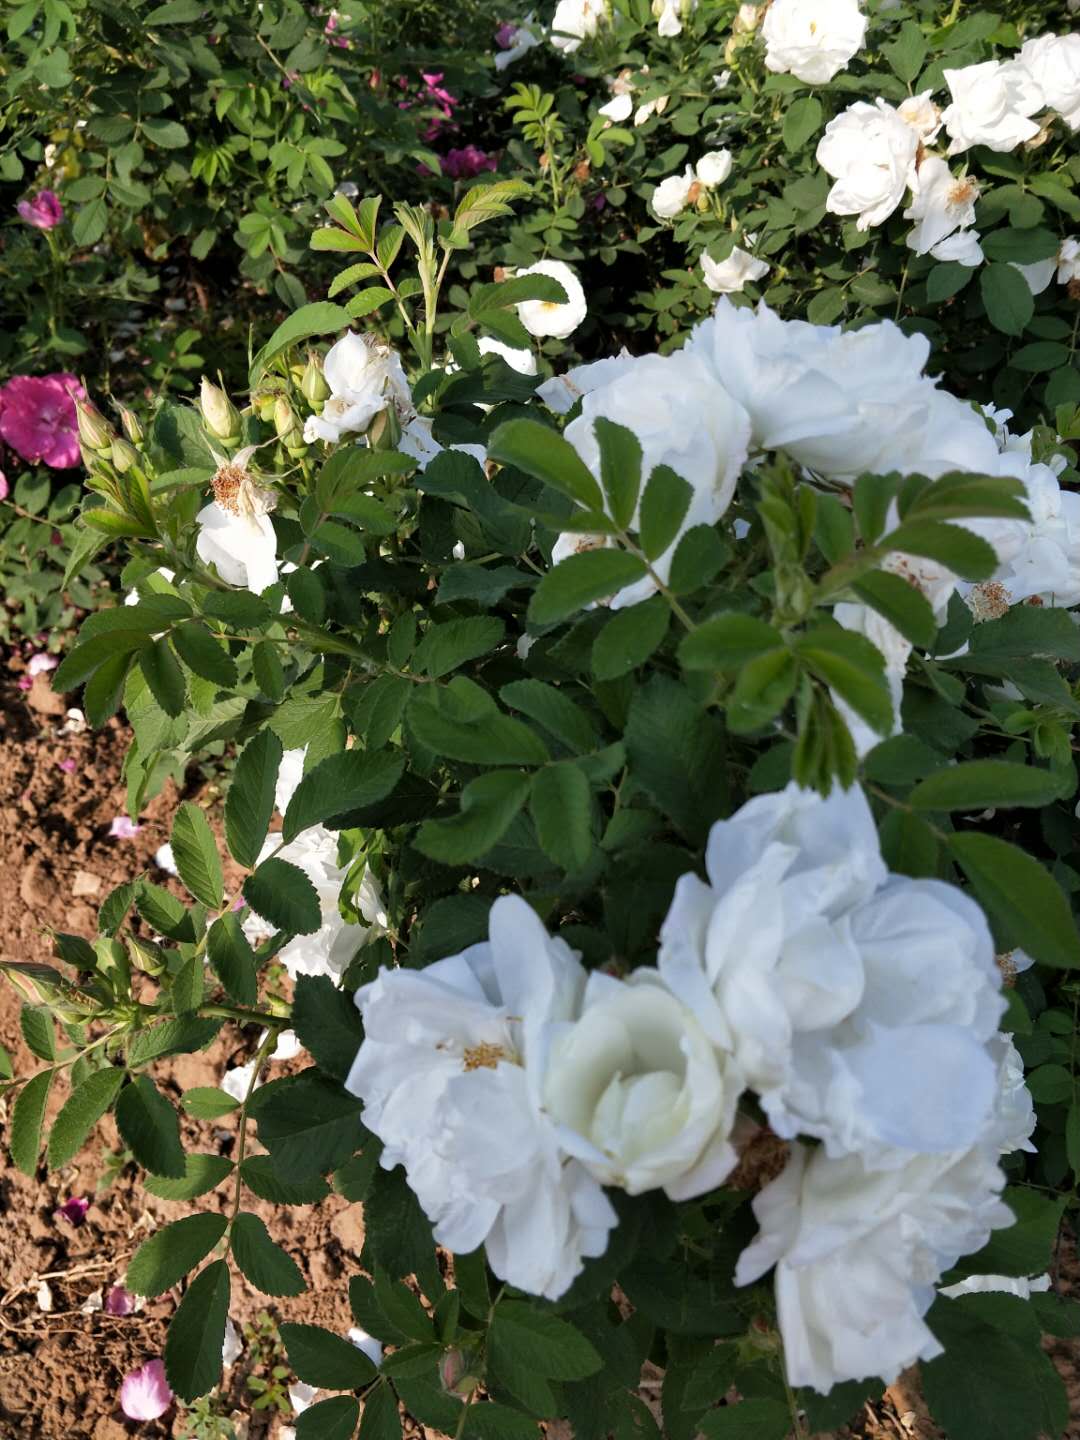 白色玫瑰苗 山东白色玫瑰苗批发商 大量种植供应玫瑰花幼苗 玫瑰花小苗  白色重瓣玫瑰苗图片